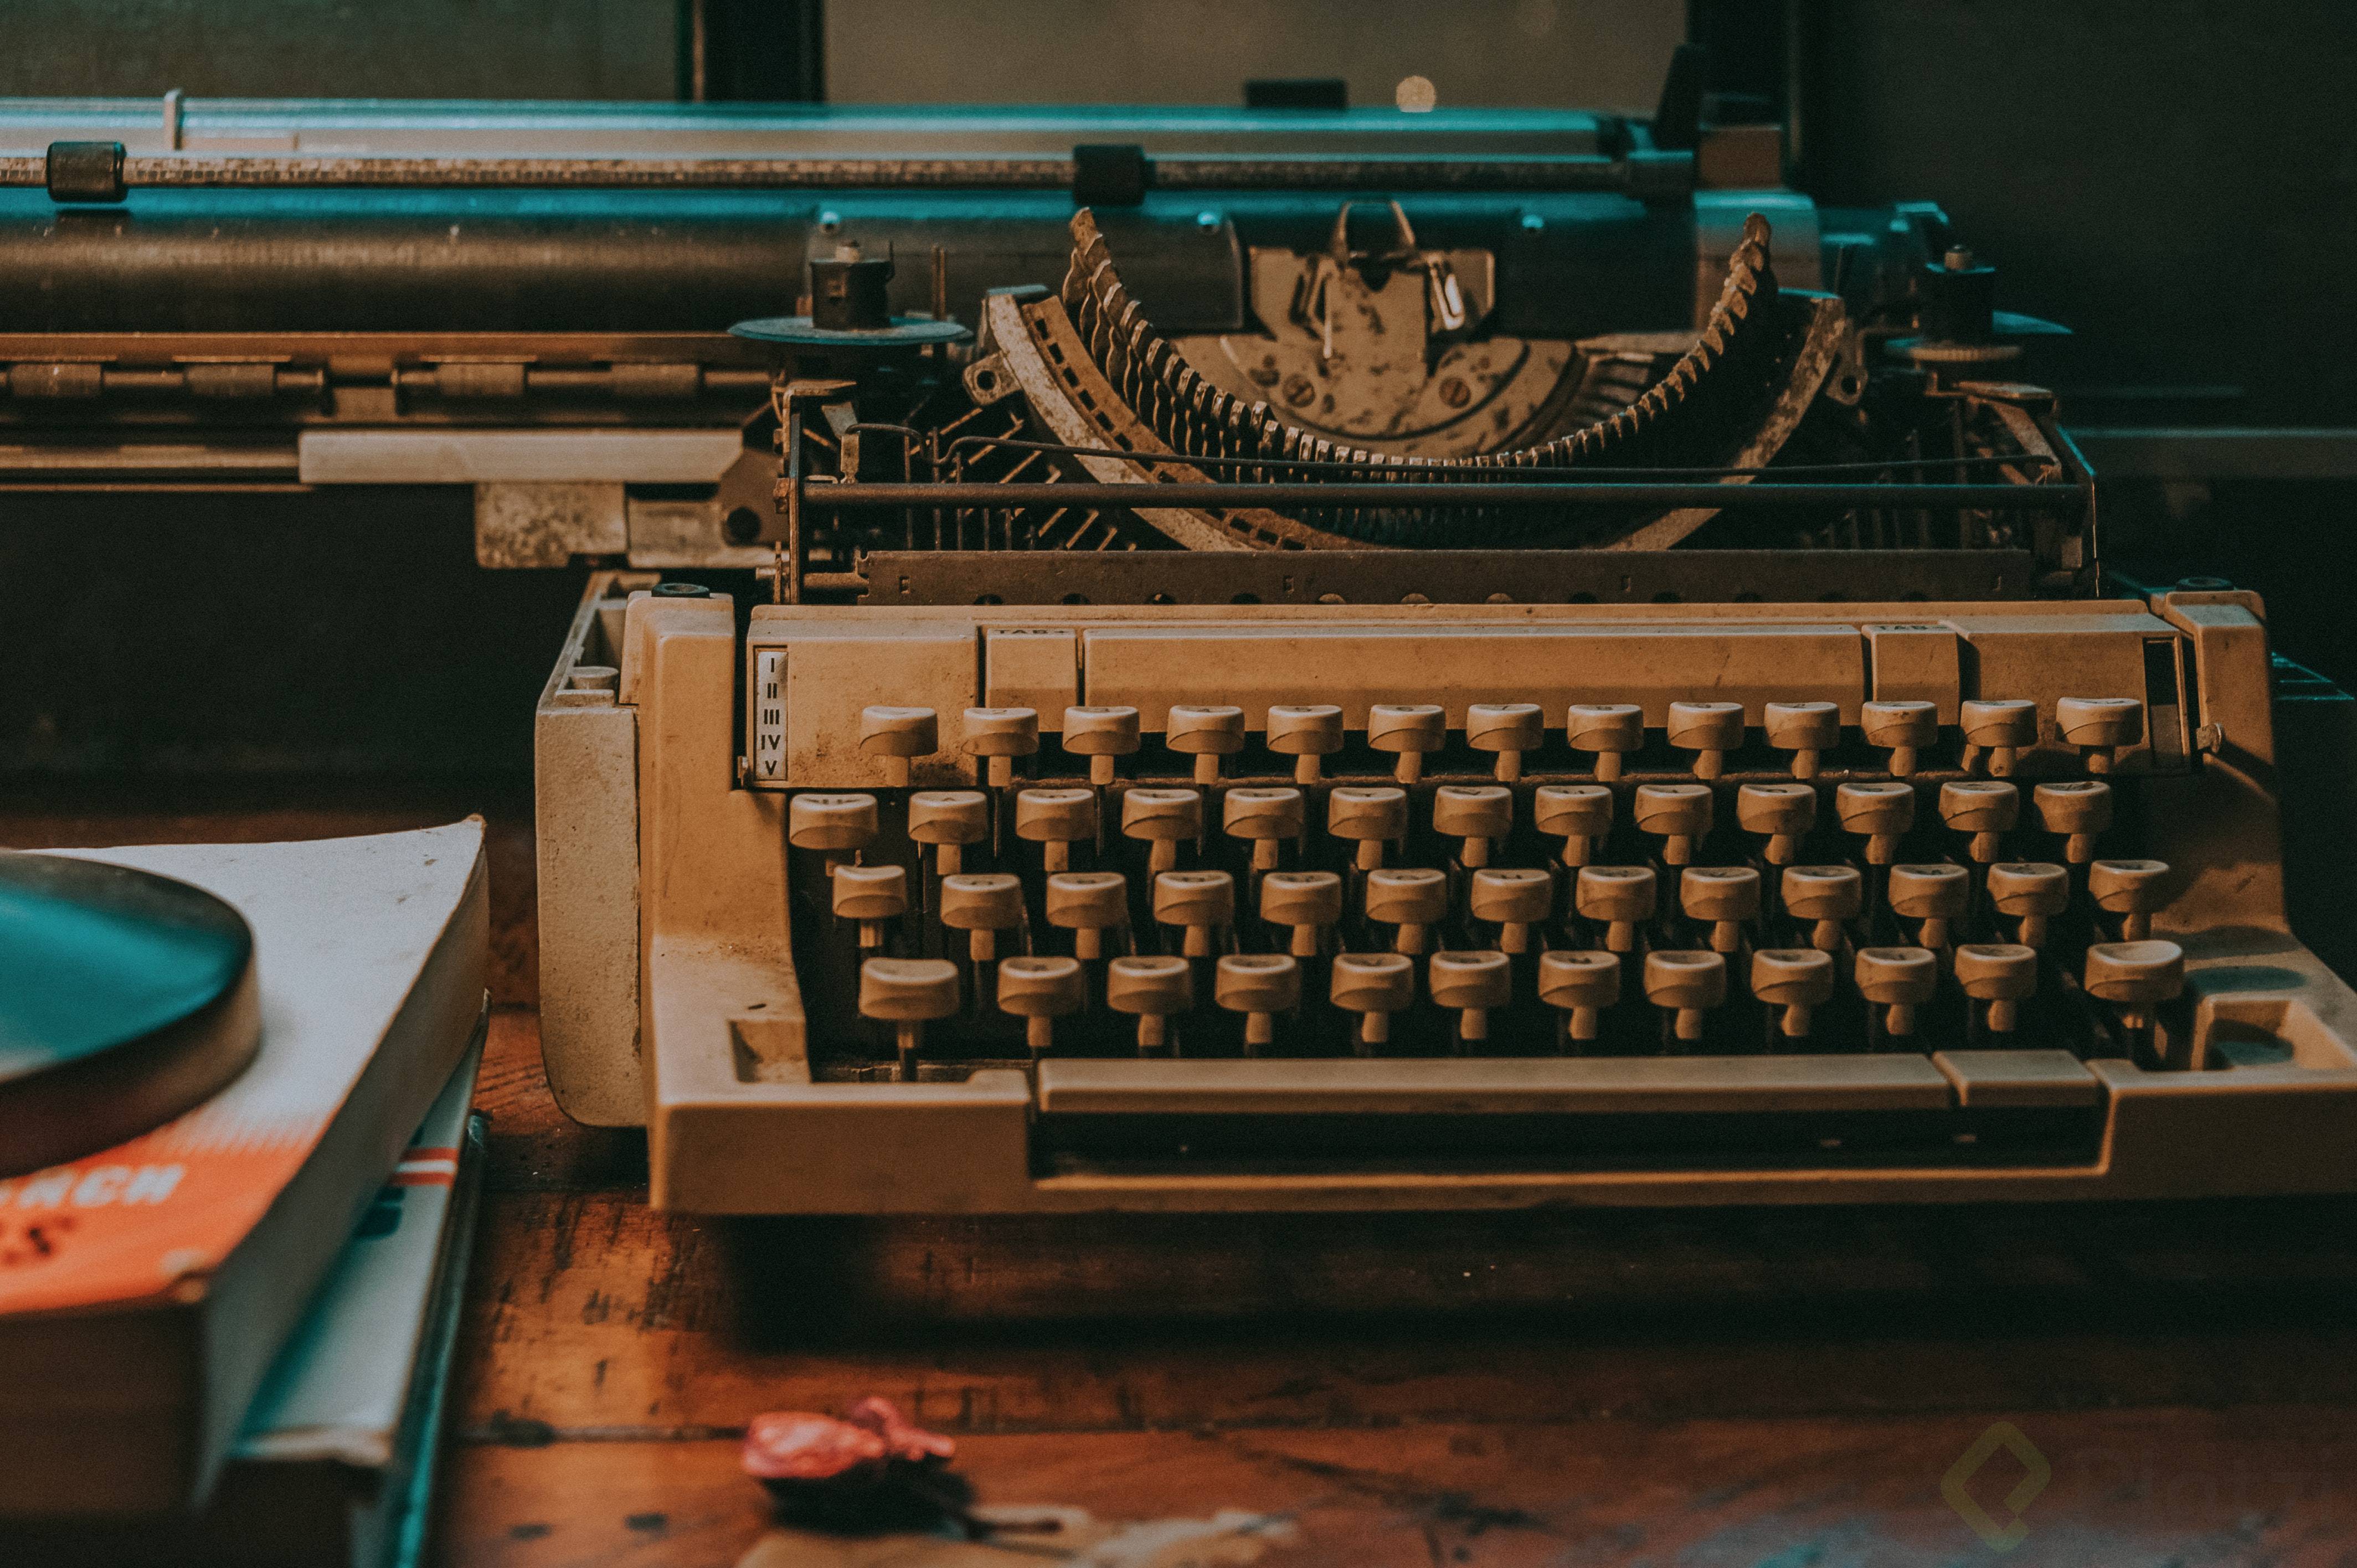 close-up-photo-of-vintage-typewriter-1425146.jpg